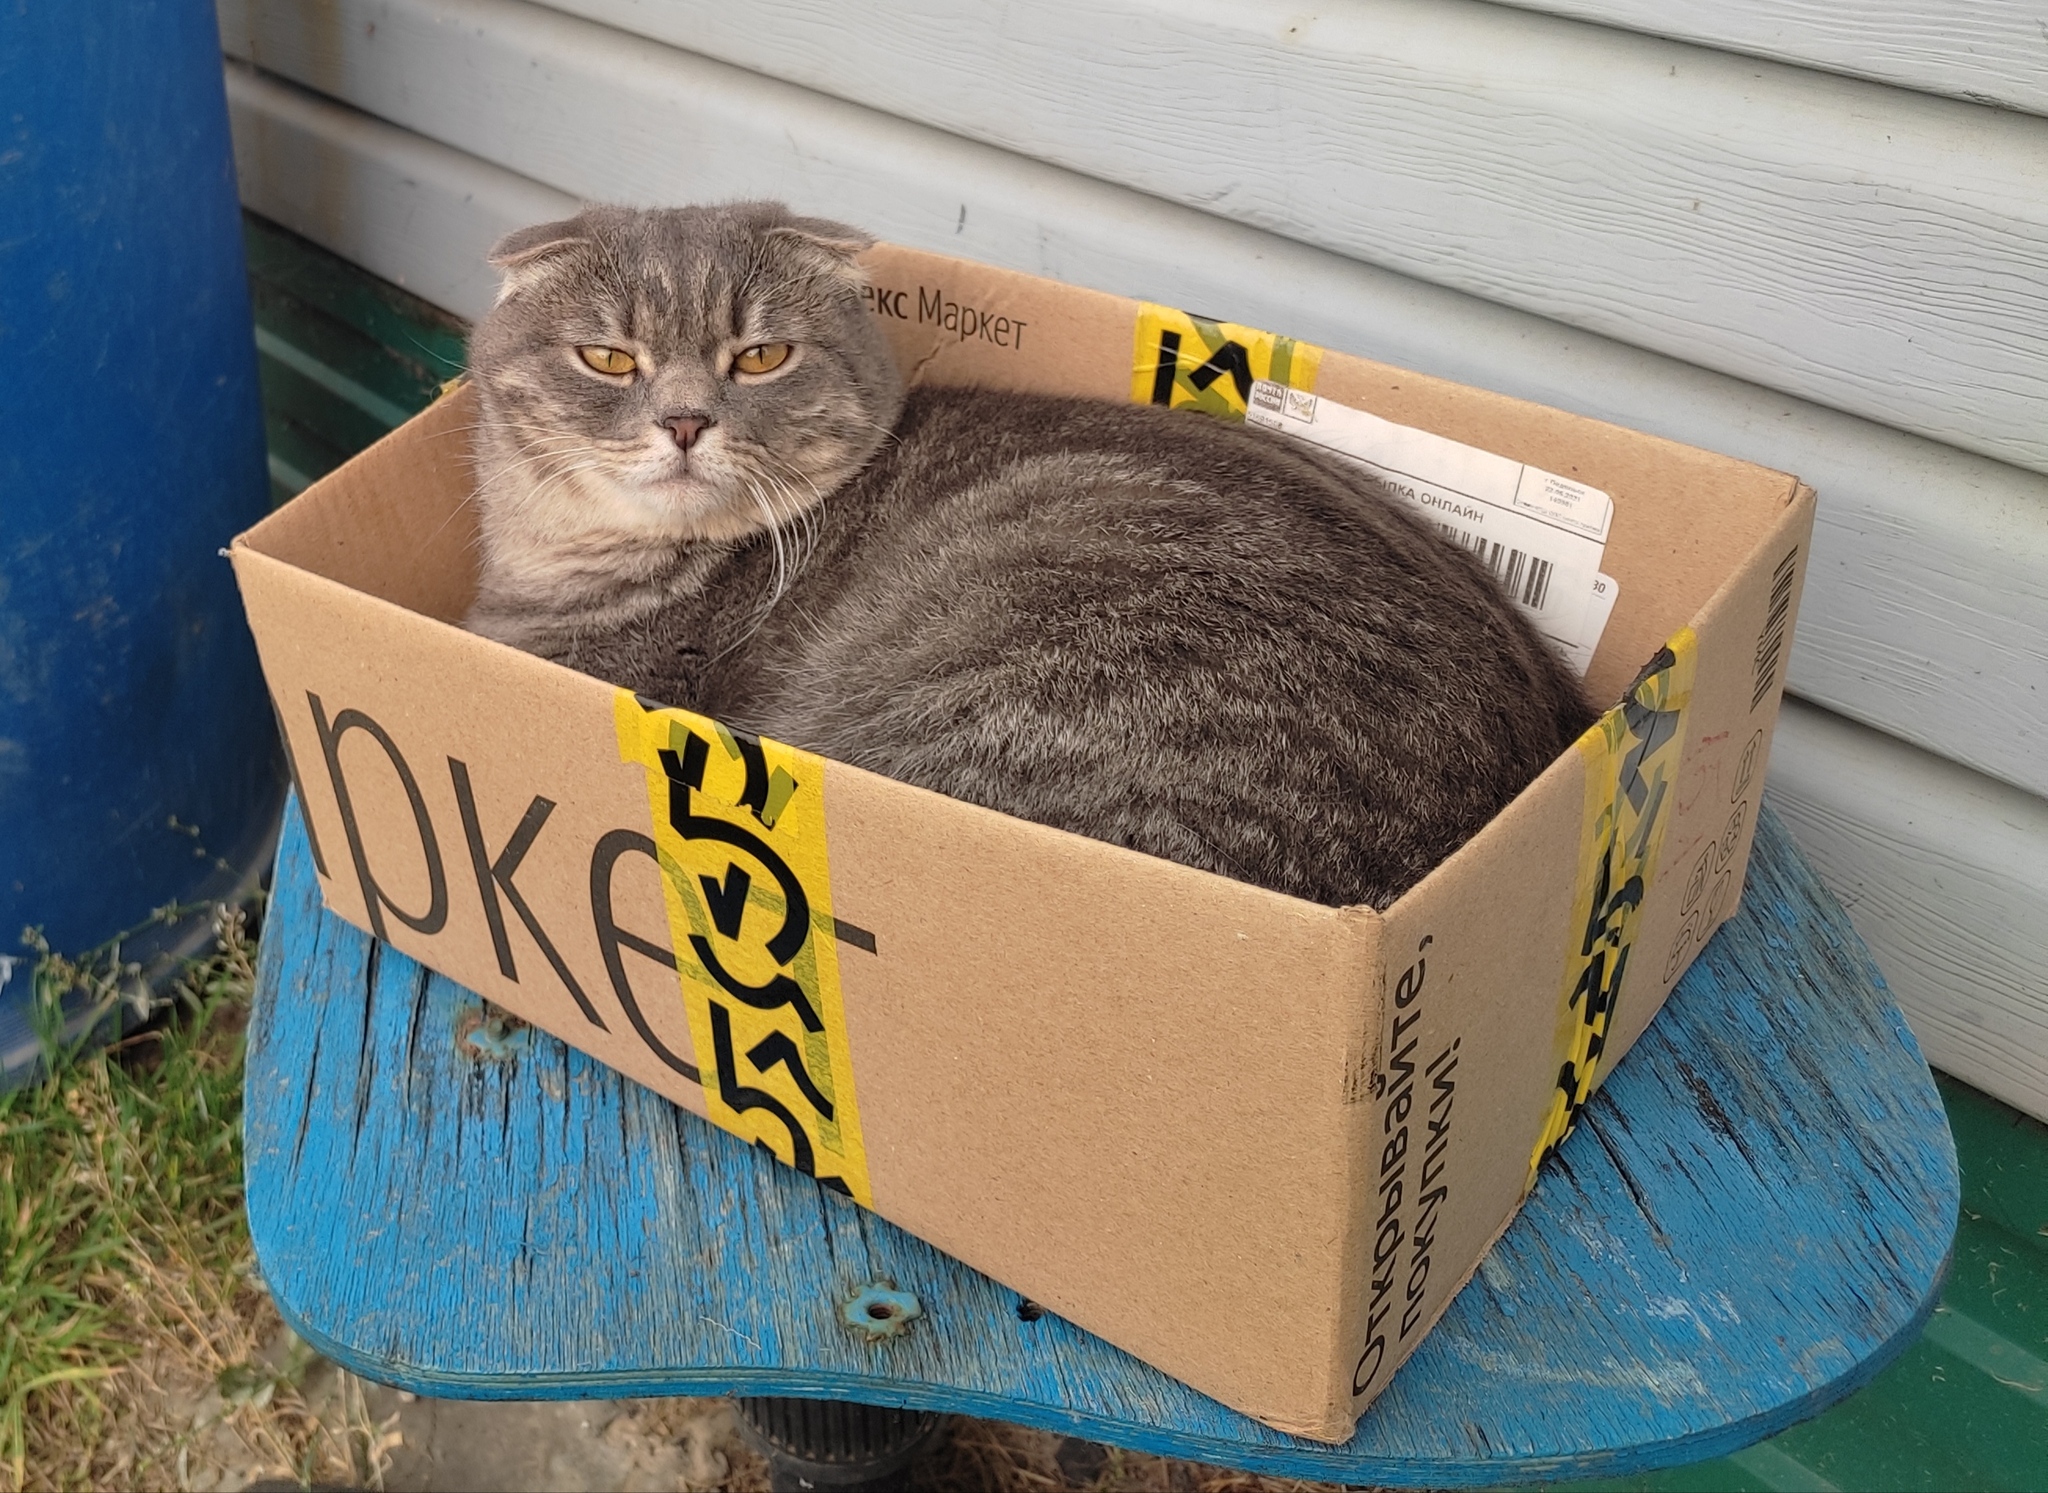 Bun in a box - cat, Scottish lop-eared